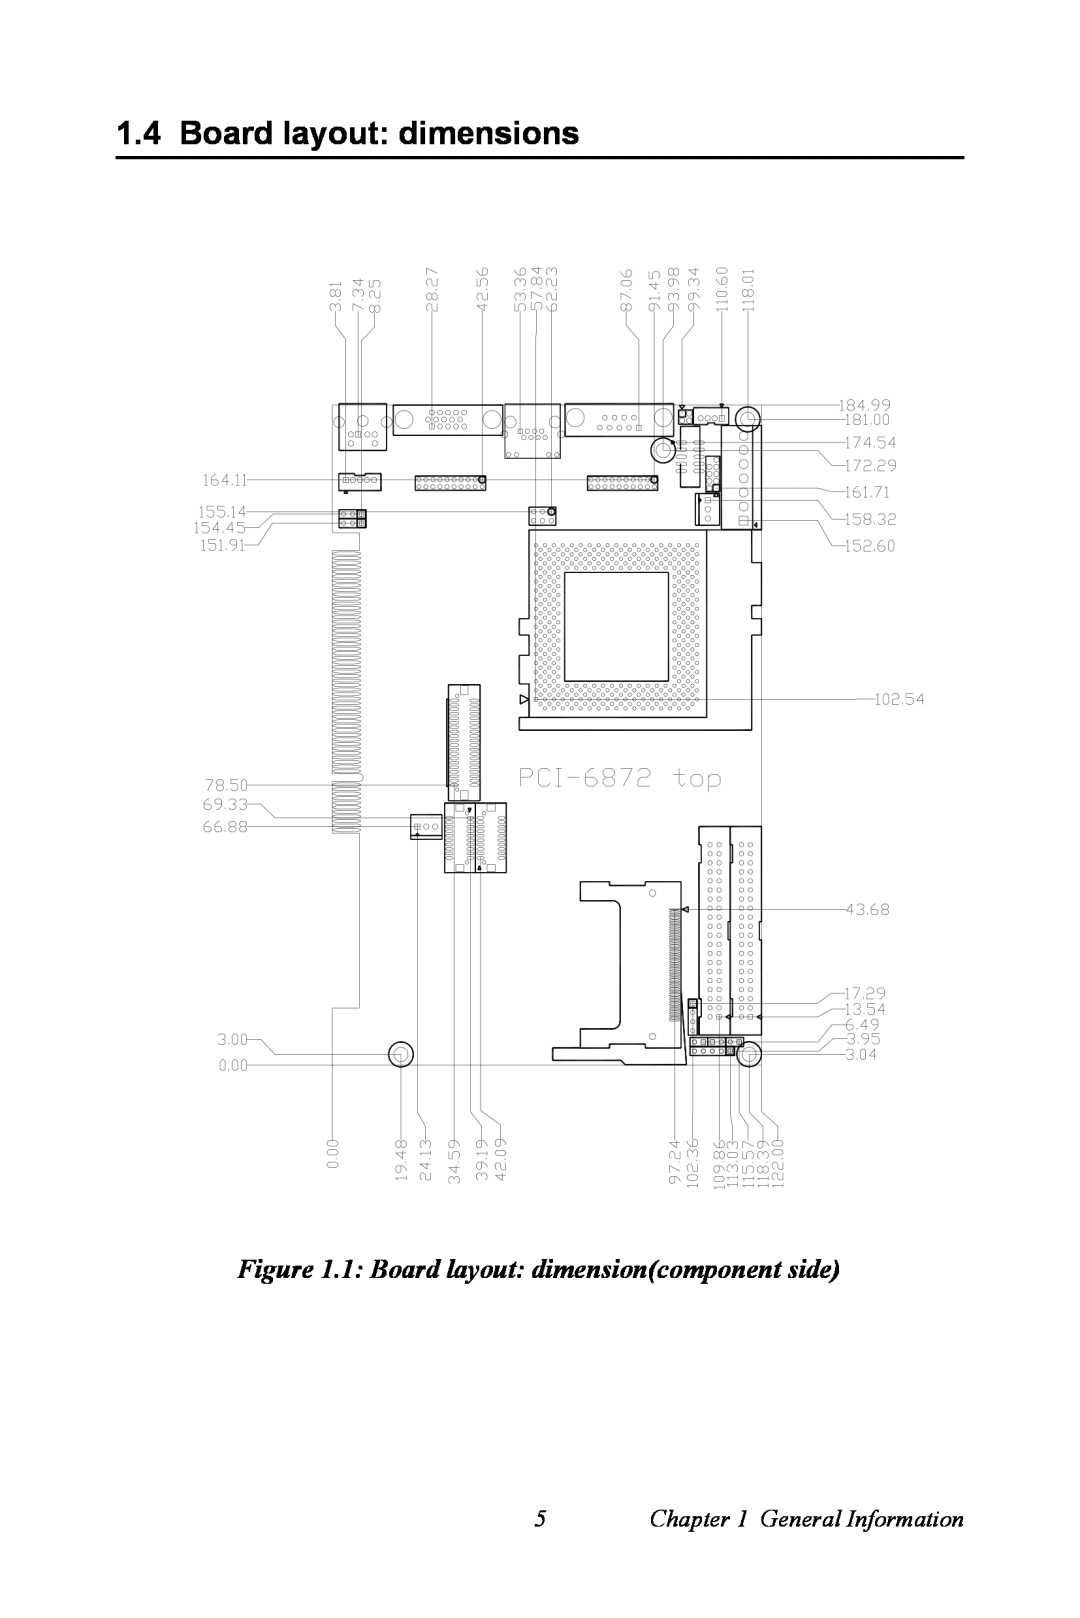 Advantech PCI-6872 user manual Board layout dimensions, 1 Board layout dimensioncomponent side, General Information 